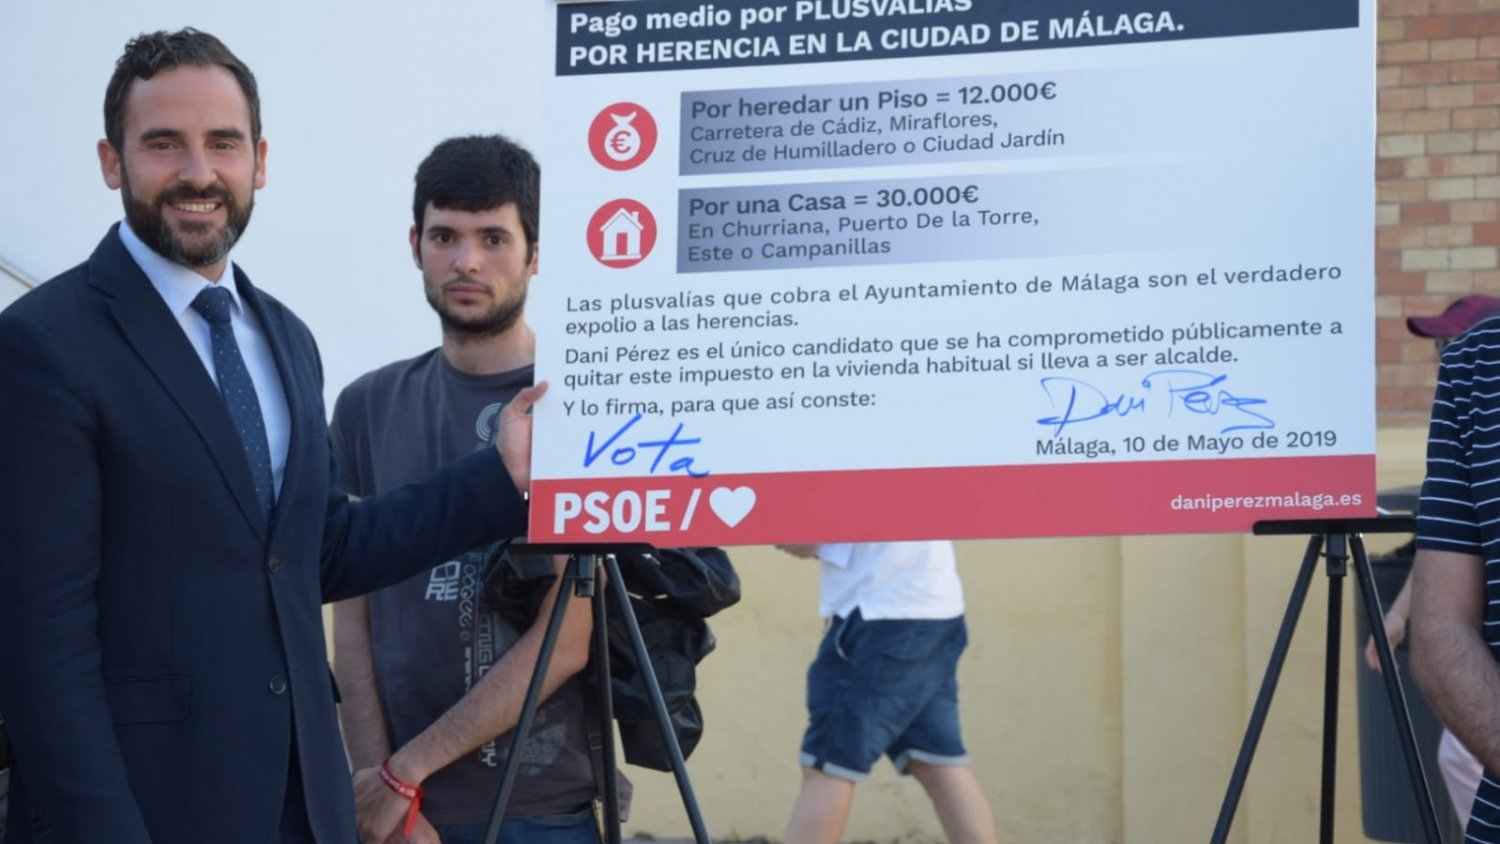 Dani Pérez promete eliminar las plusvalías por herencia si llega a la Alcaldía